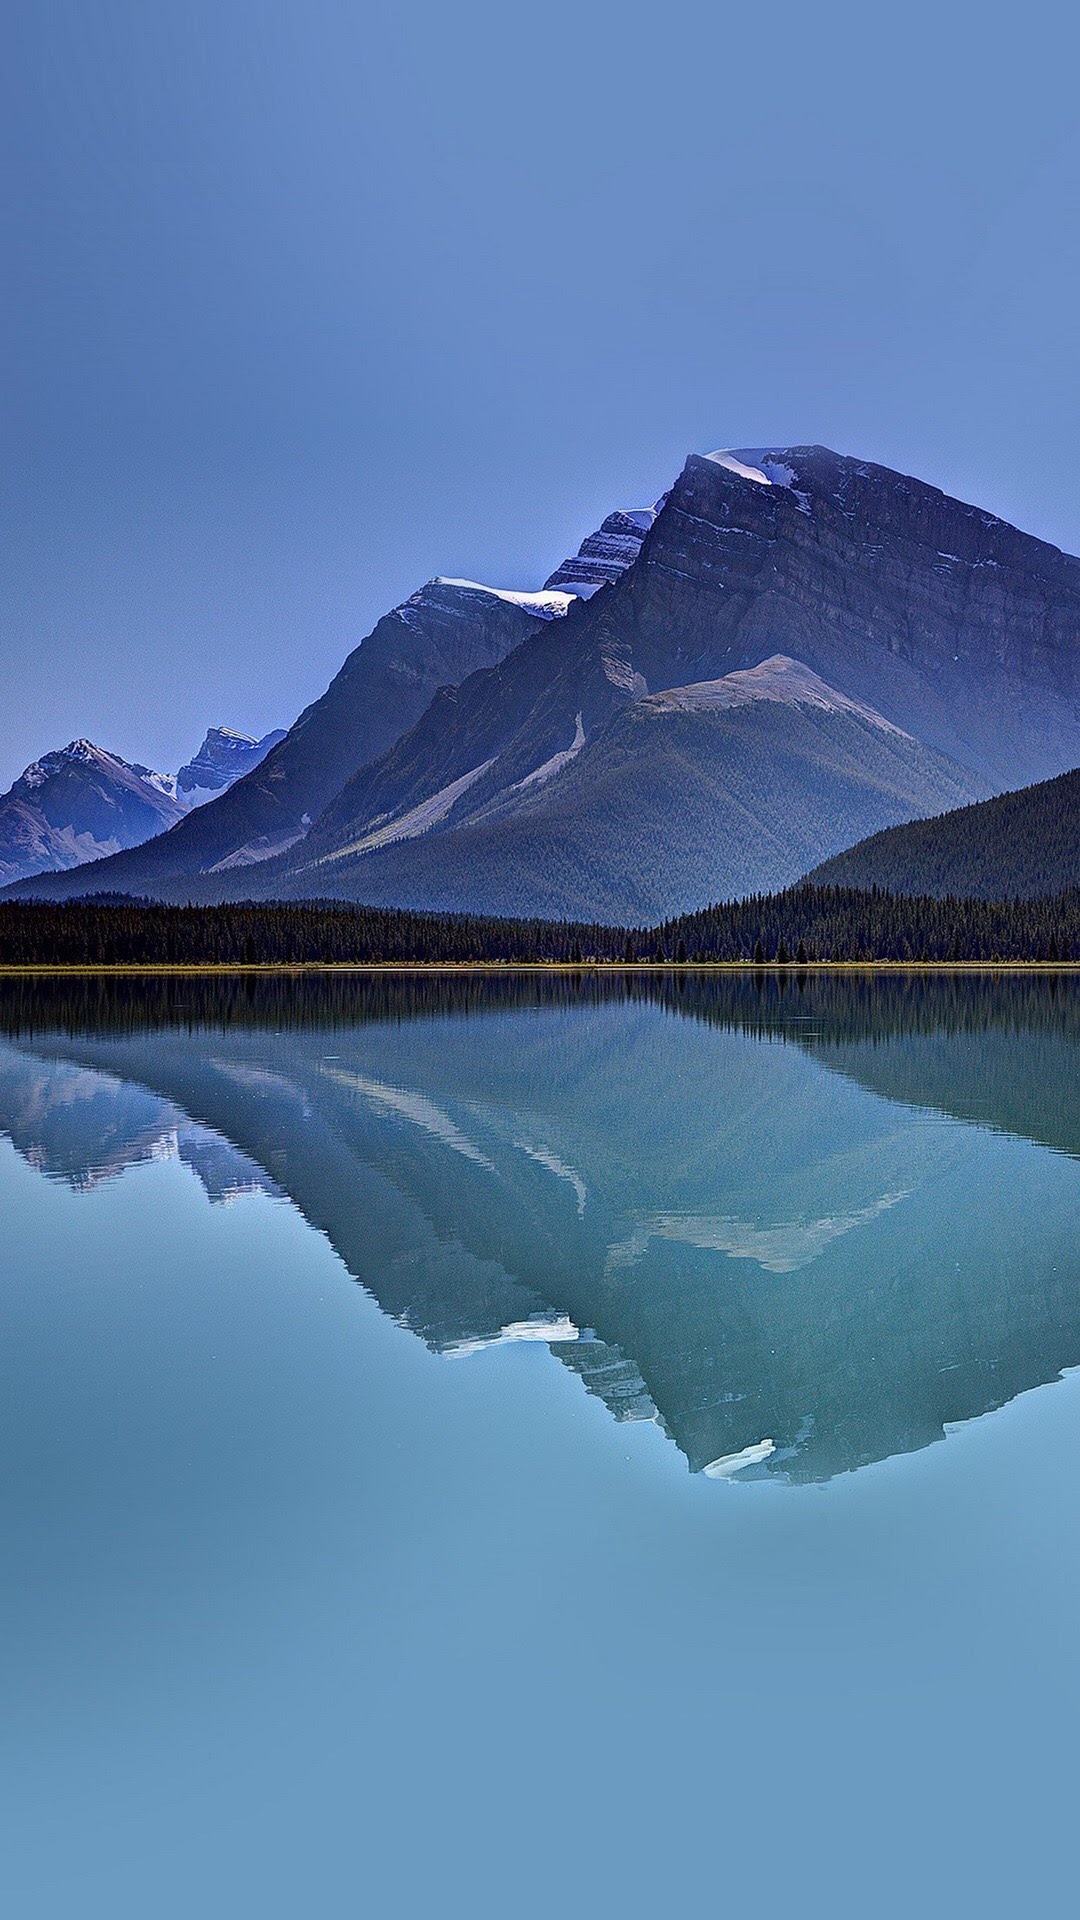 巍峨雄伟的山脉倒影在如镜子般的湖面上